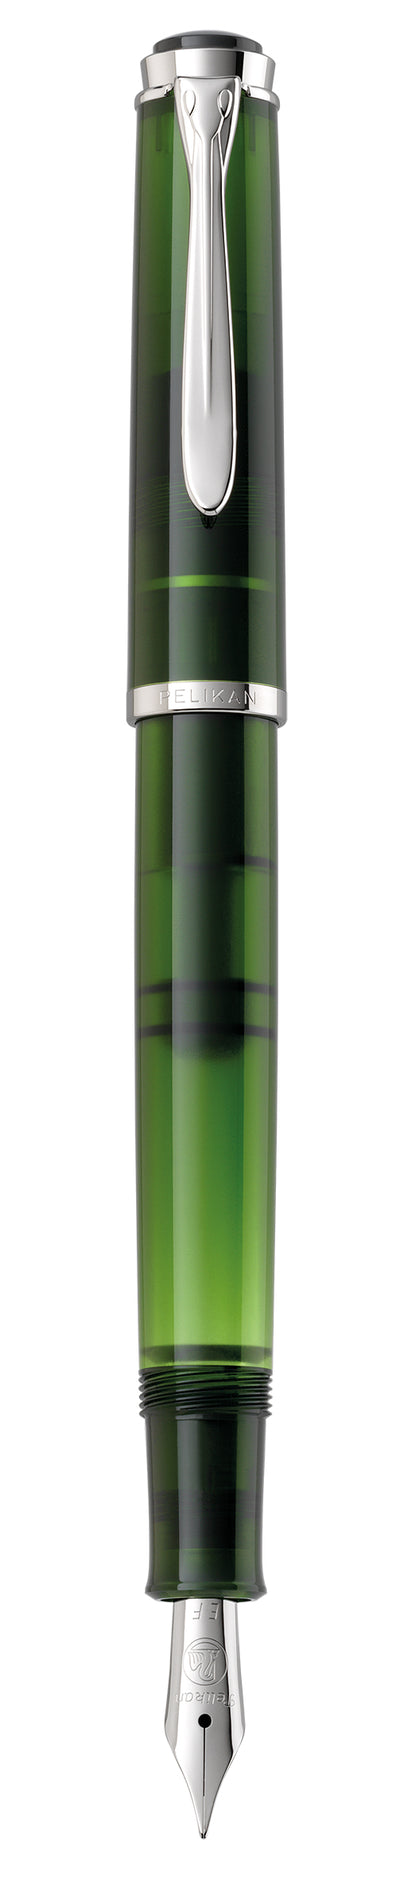 Pelikan Classic 205 Olivine Fountain Pen | 810999 | Pen Place